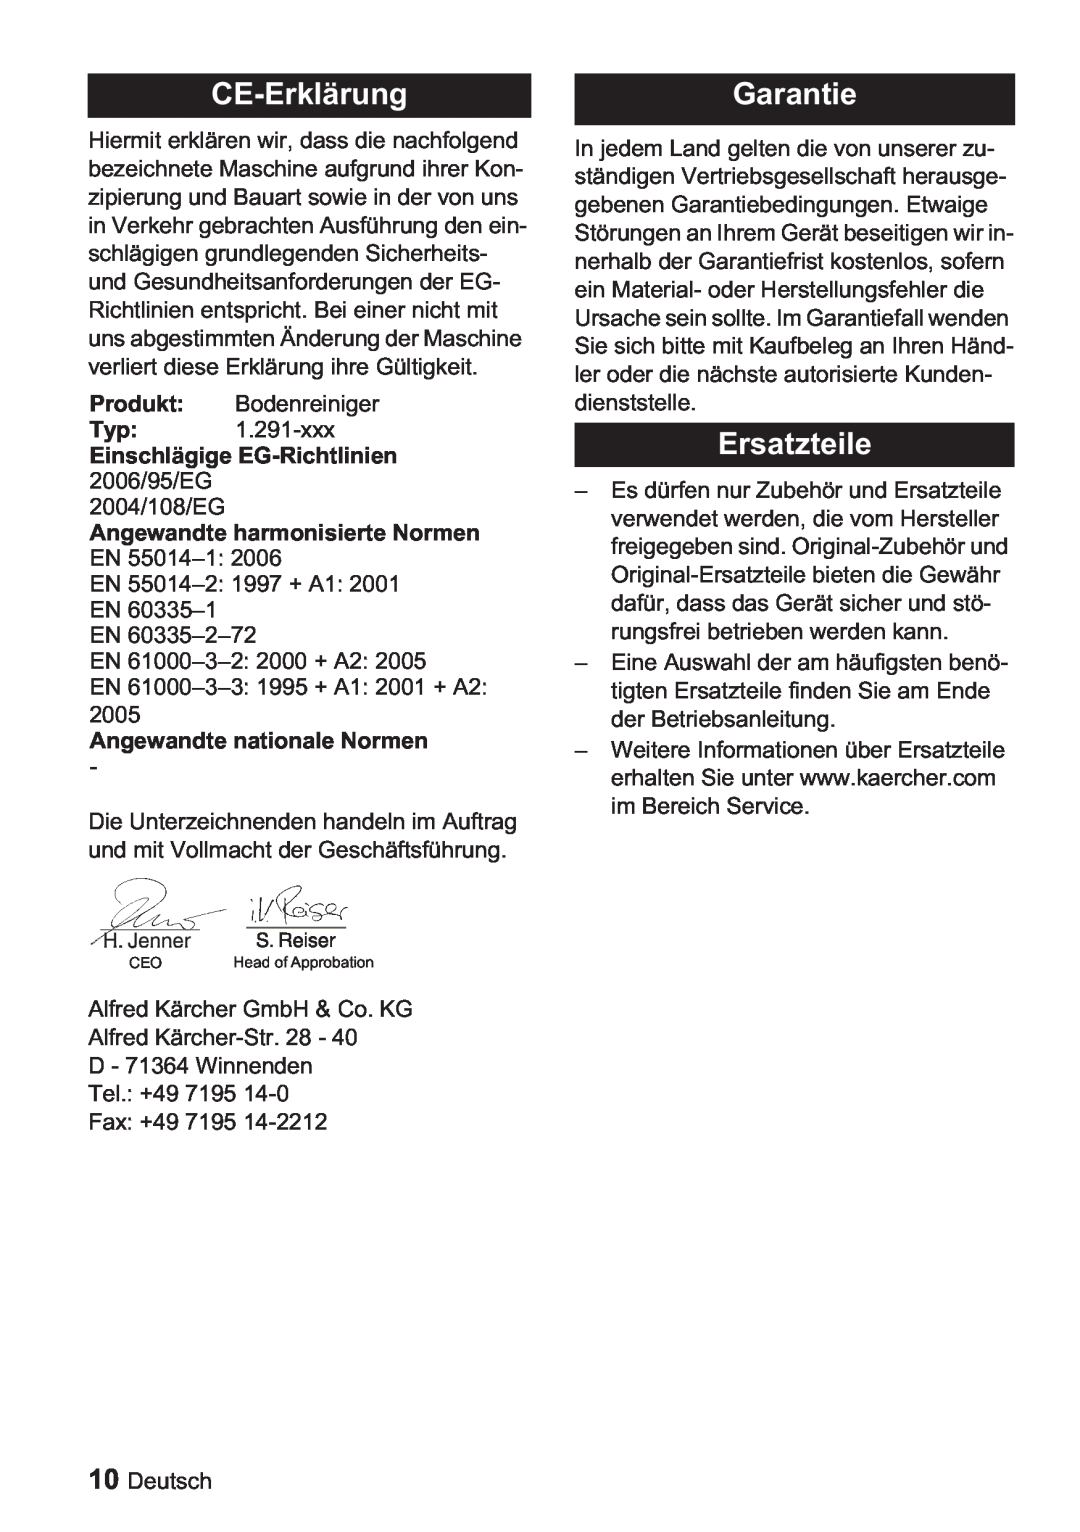 Karcher BDP 1500, BDP 50 manual CE-Erklärung, Garantie, Ersatzteile, Einschlägige EG-Richtlinien 2006/95/EG 2004/108/EG 